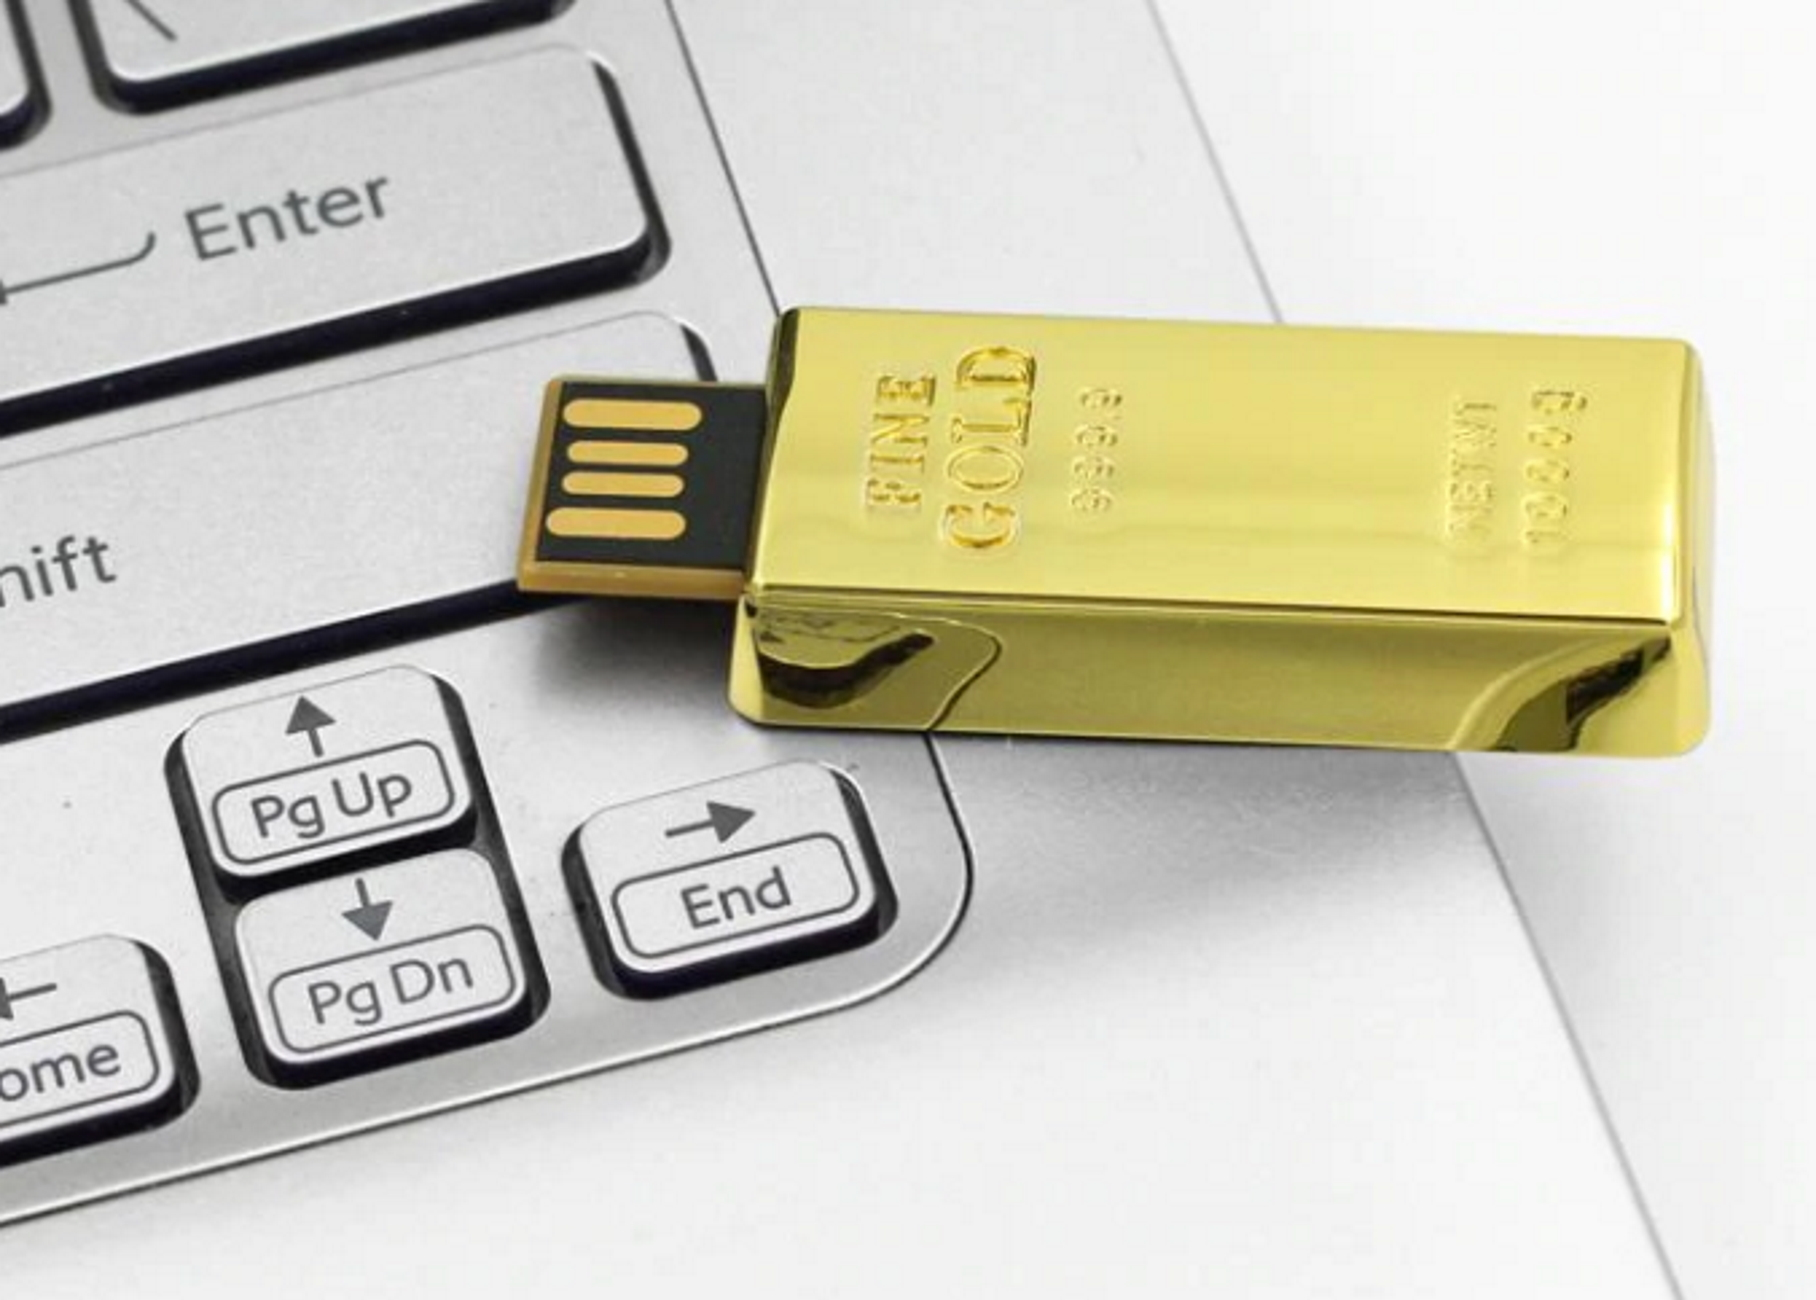 USB-Stick ® 1 USB Goldbarren GERMANY GB) (Gold,